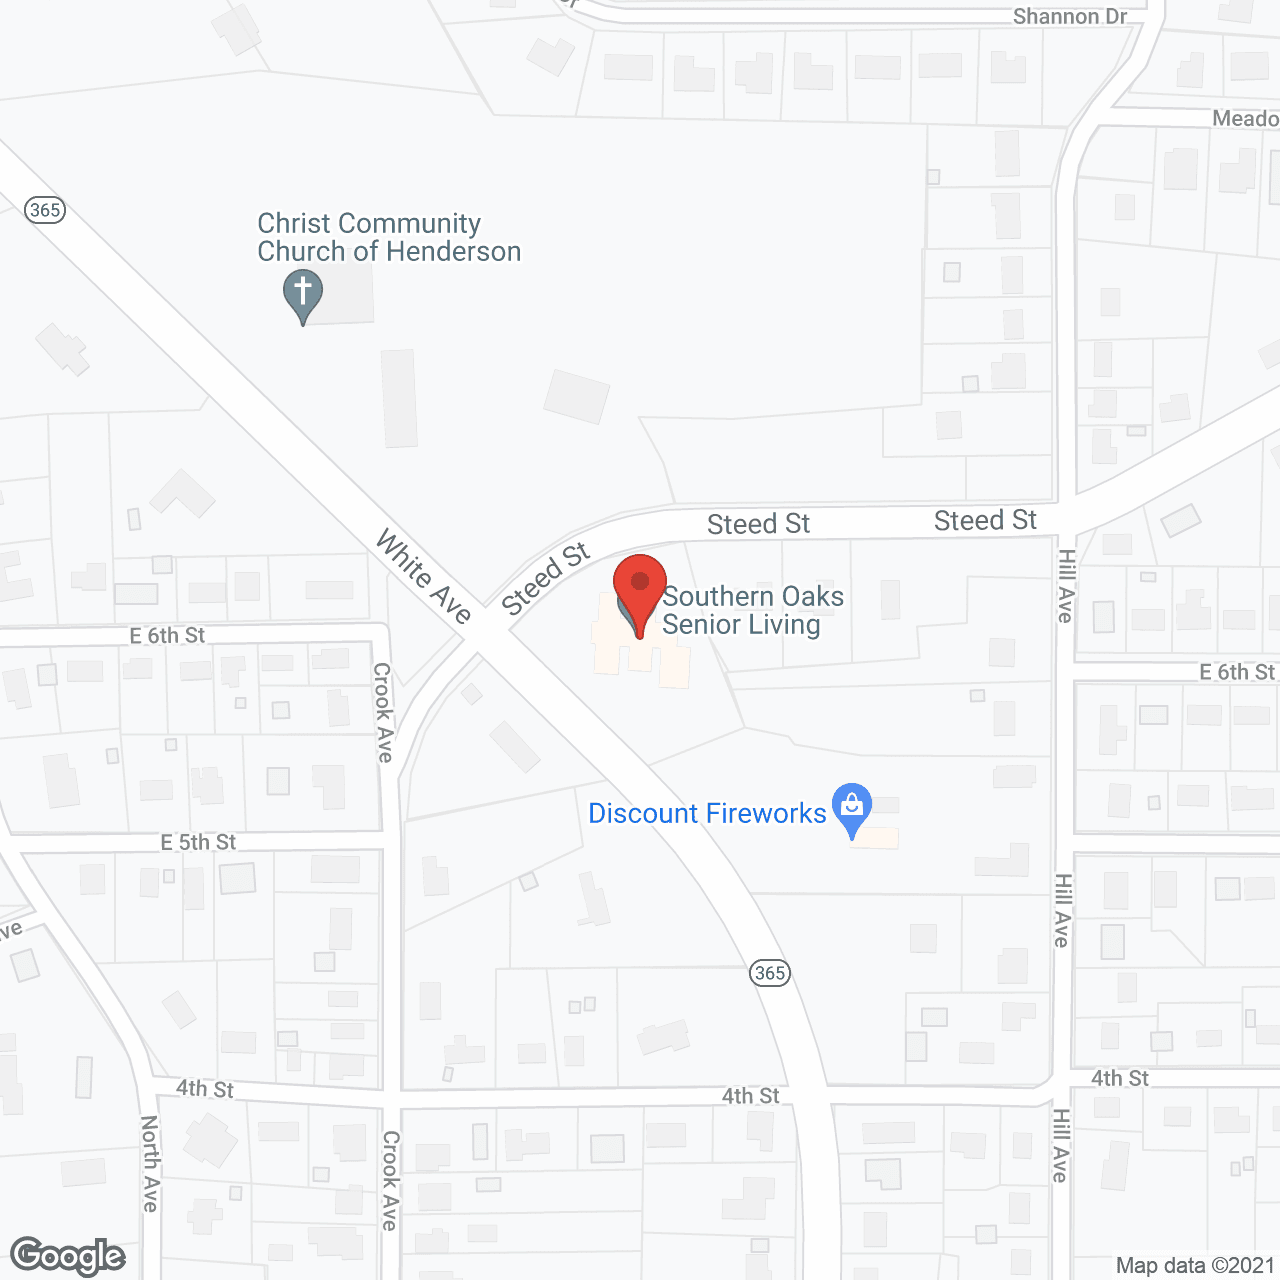 Southern Oaks in google map